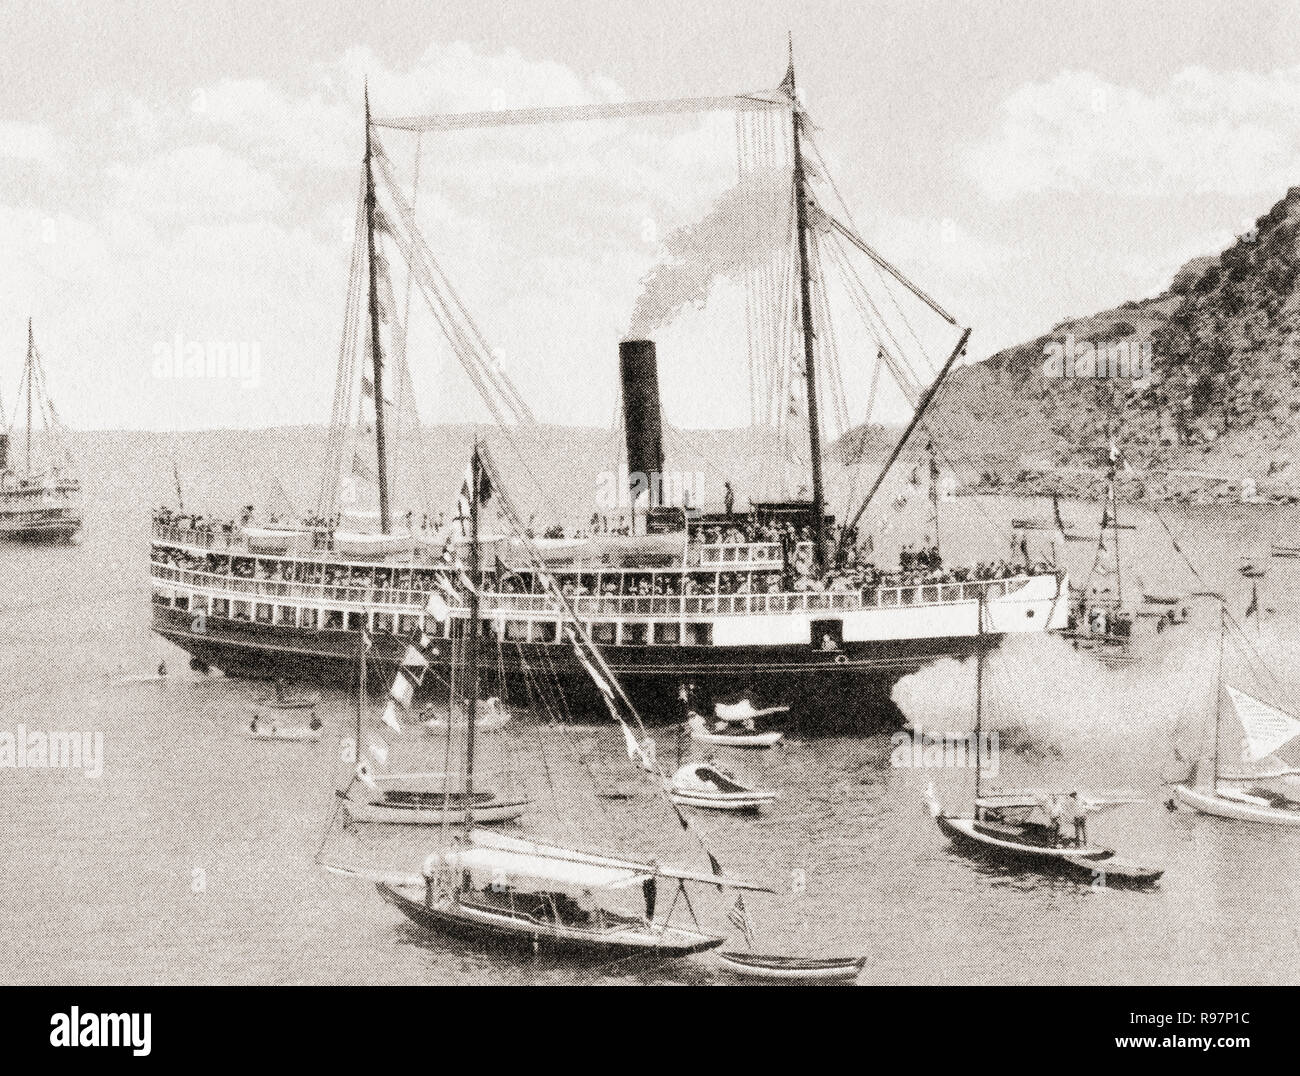 Die SS Cabrillo, einem hölzernen Dampfer zum Transport Touristen zwischen den Los Angeles Harbor und Avalon und zwei Häfen auf Santa Catalina Island, Kalifornien, Vereinigte Staaten von Amerika, hier beim Landeanflug auf Avalon C. 1915. Von wunderbaren Kalifornien, veröffentlicht 1915. Stockfoto